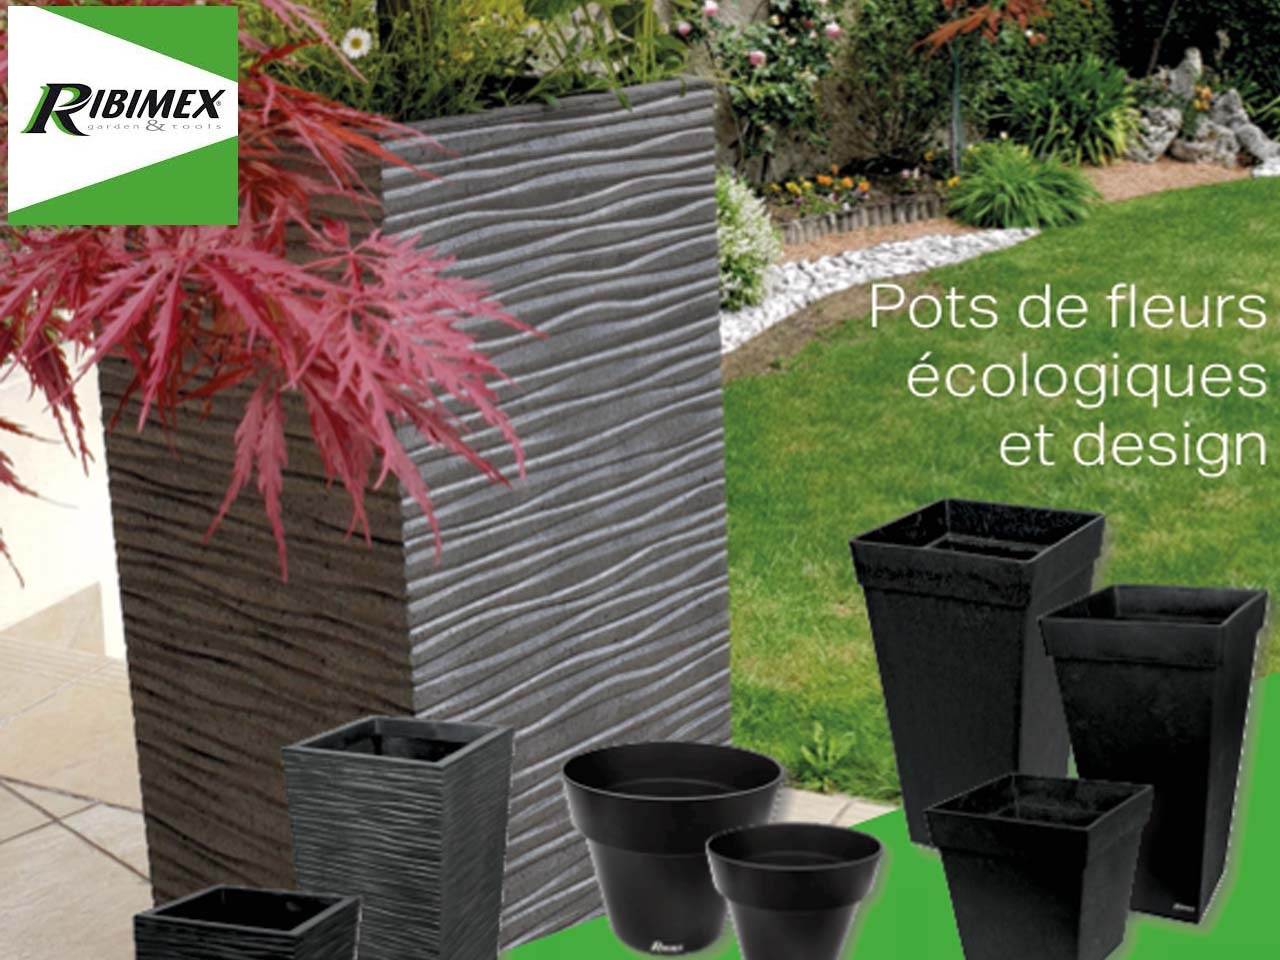 Ribimex enrichit sa gamme Eco Garden de pots de fleurs tendances !